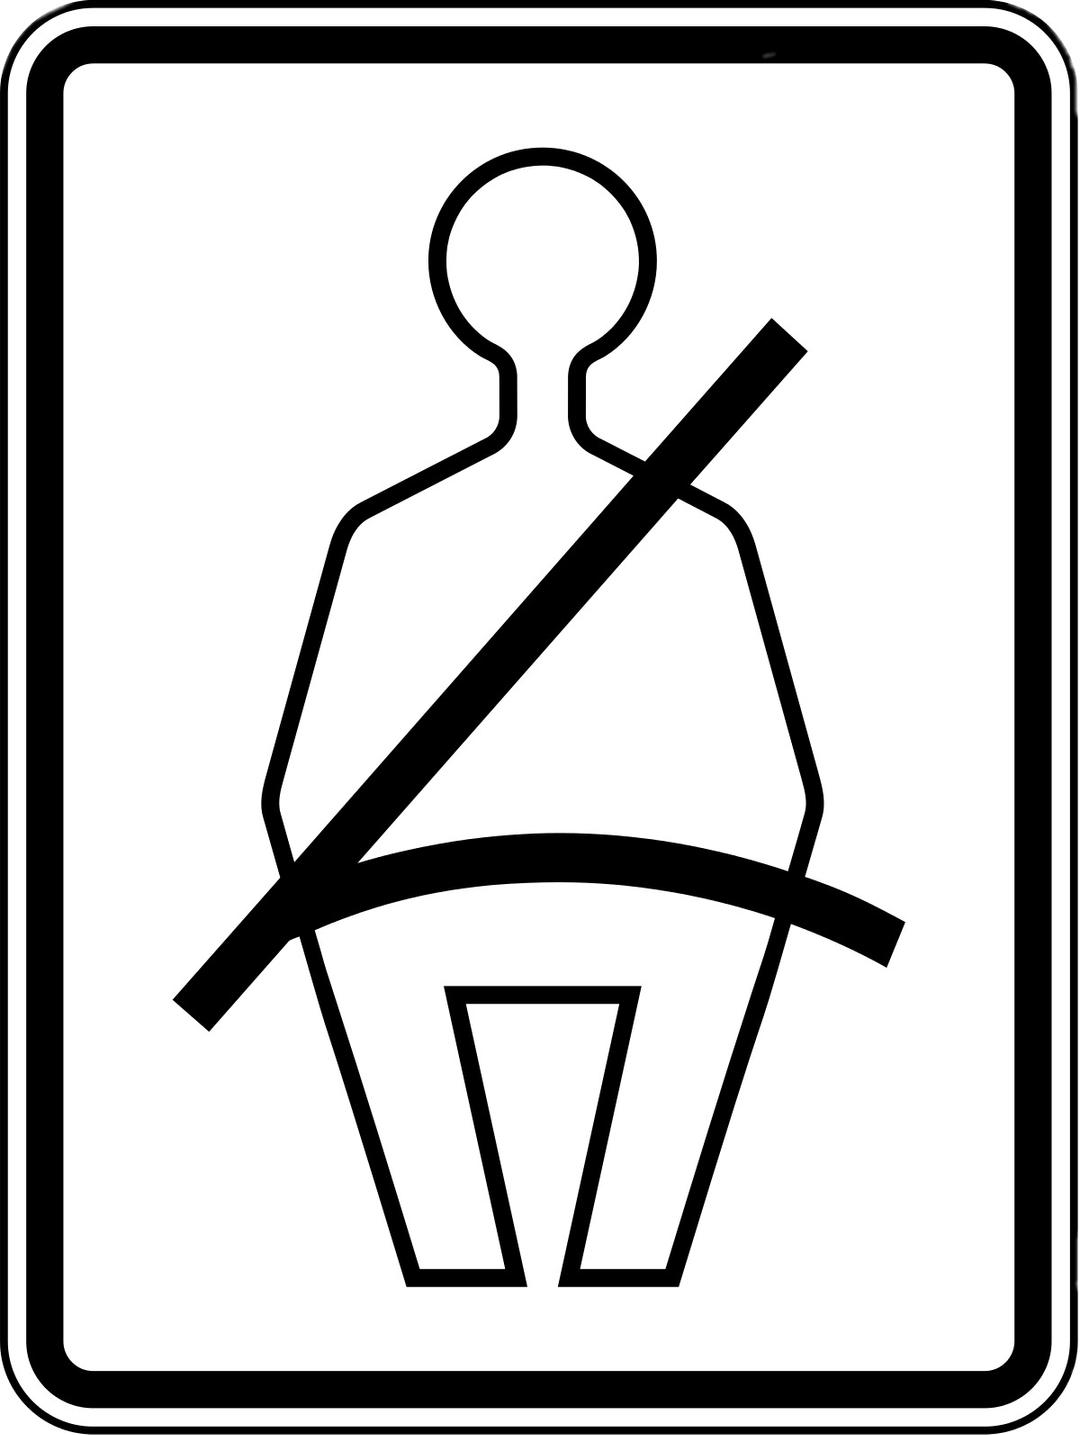 Seat Belt Rectangular Sign png transparent